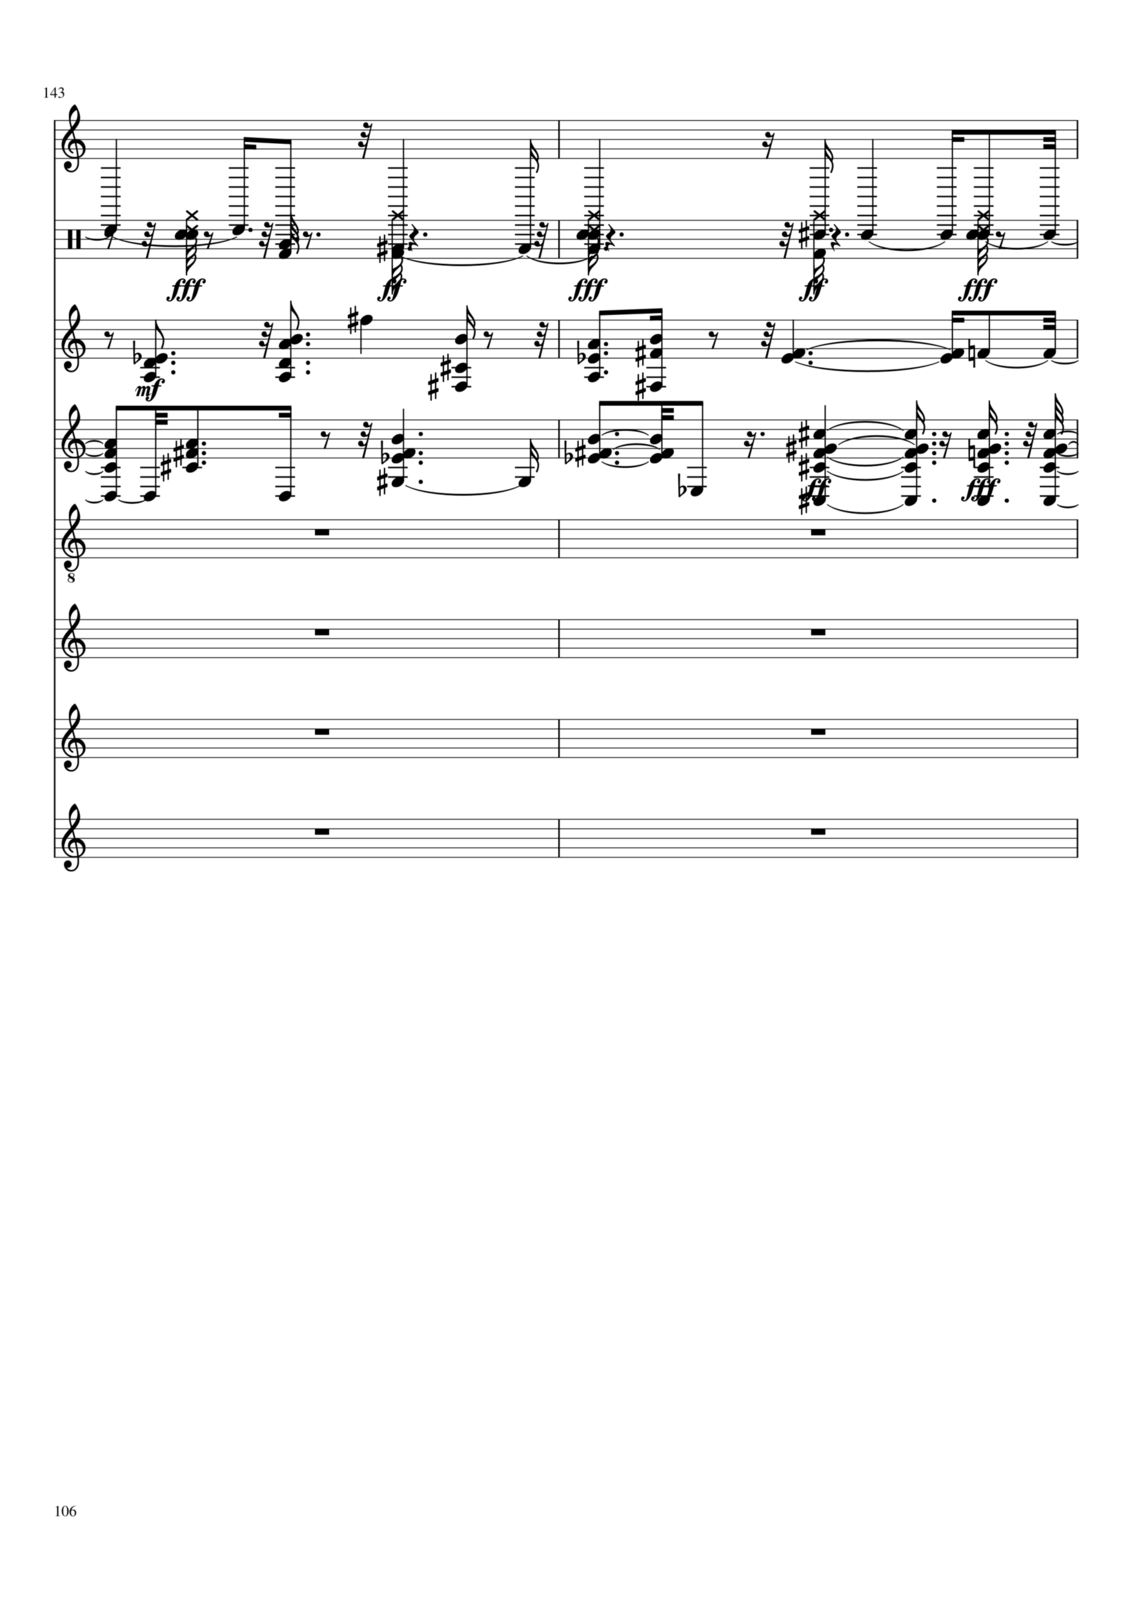 Vechnaya prizrachnaya vstrechnaya slide, Image 24